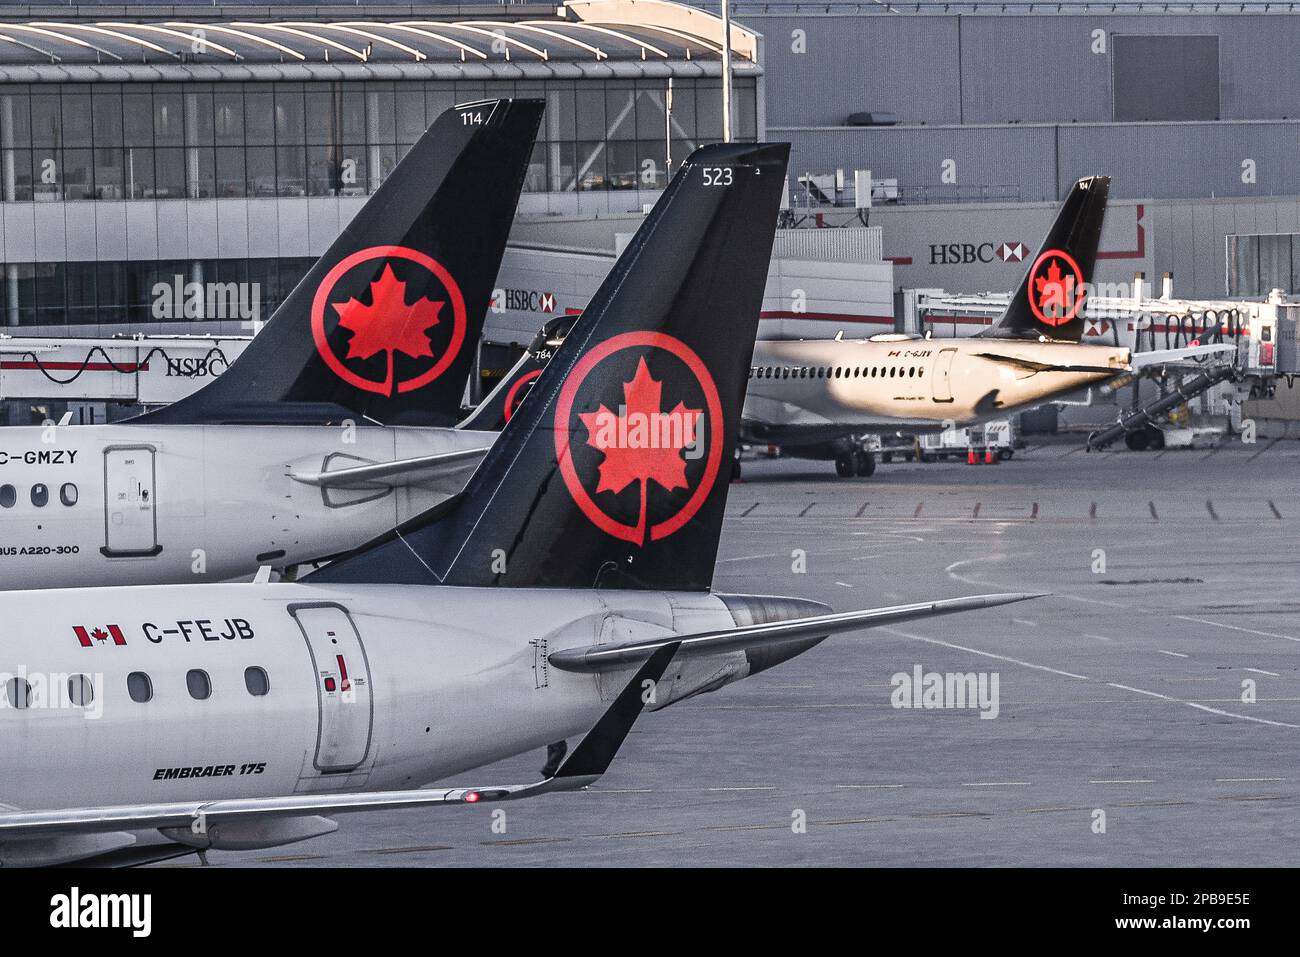 Der internationale Flughafen Lester B. Pearson, gemeinhin als Toronto Pearson International Airport bekannt, befindet sich in Mississauga. Stockfoto